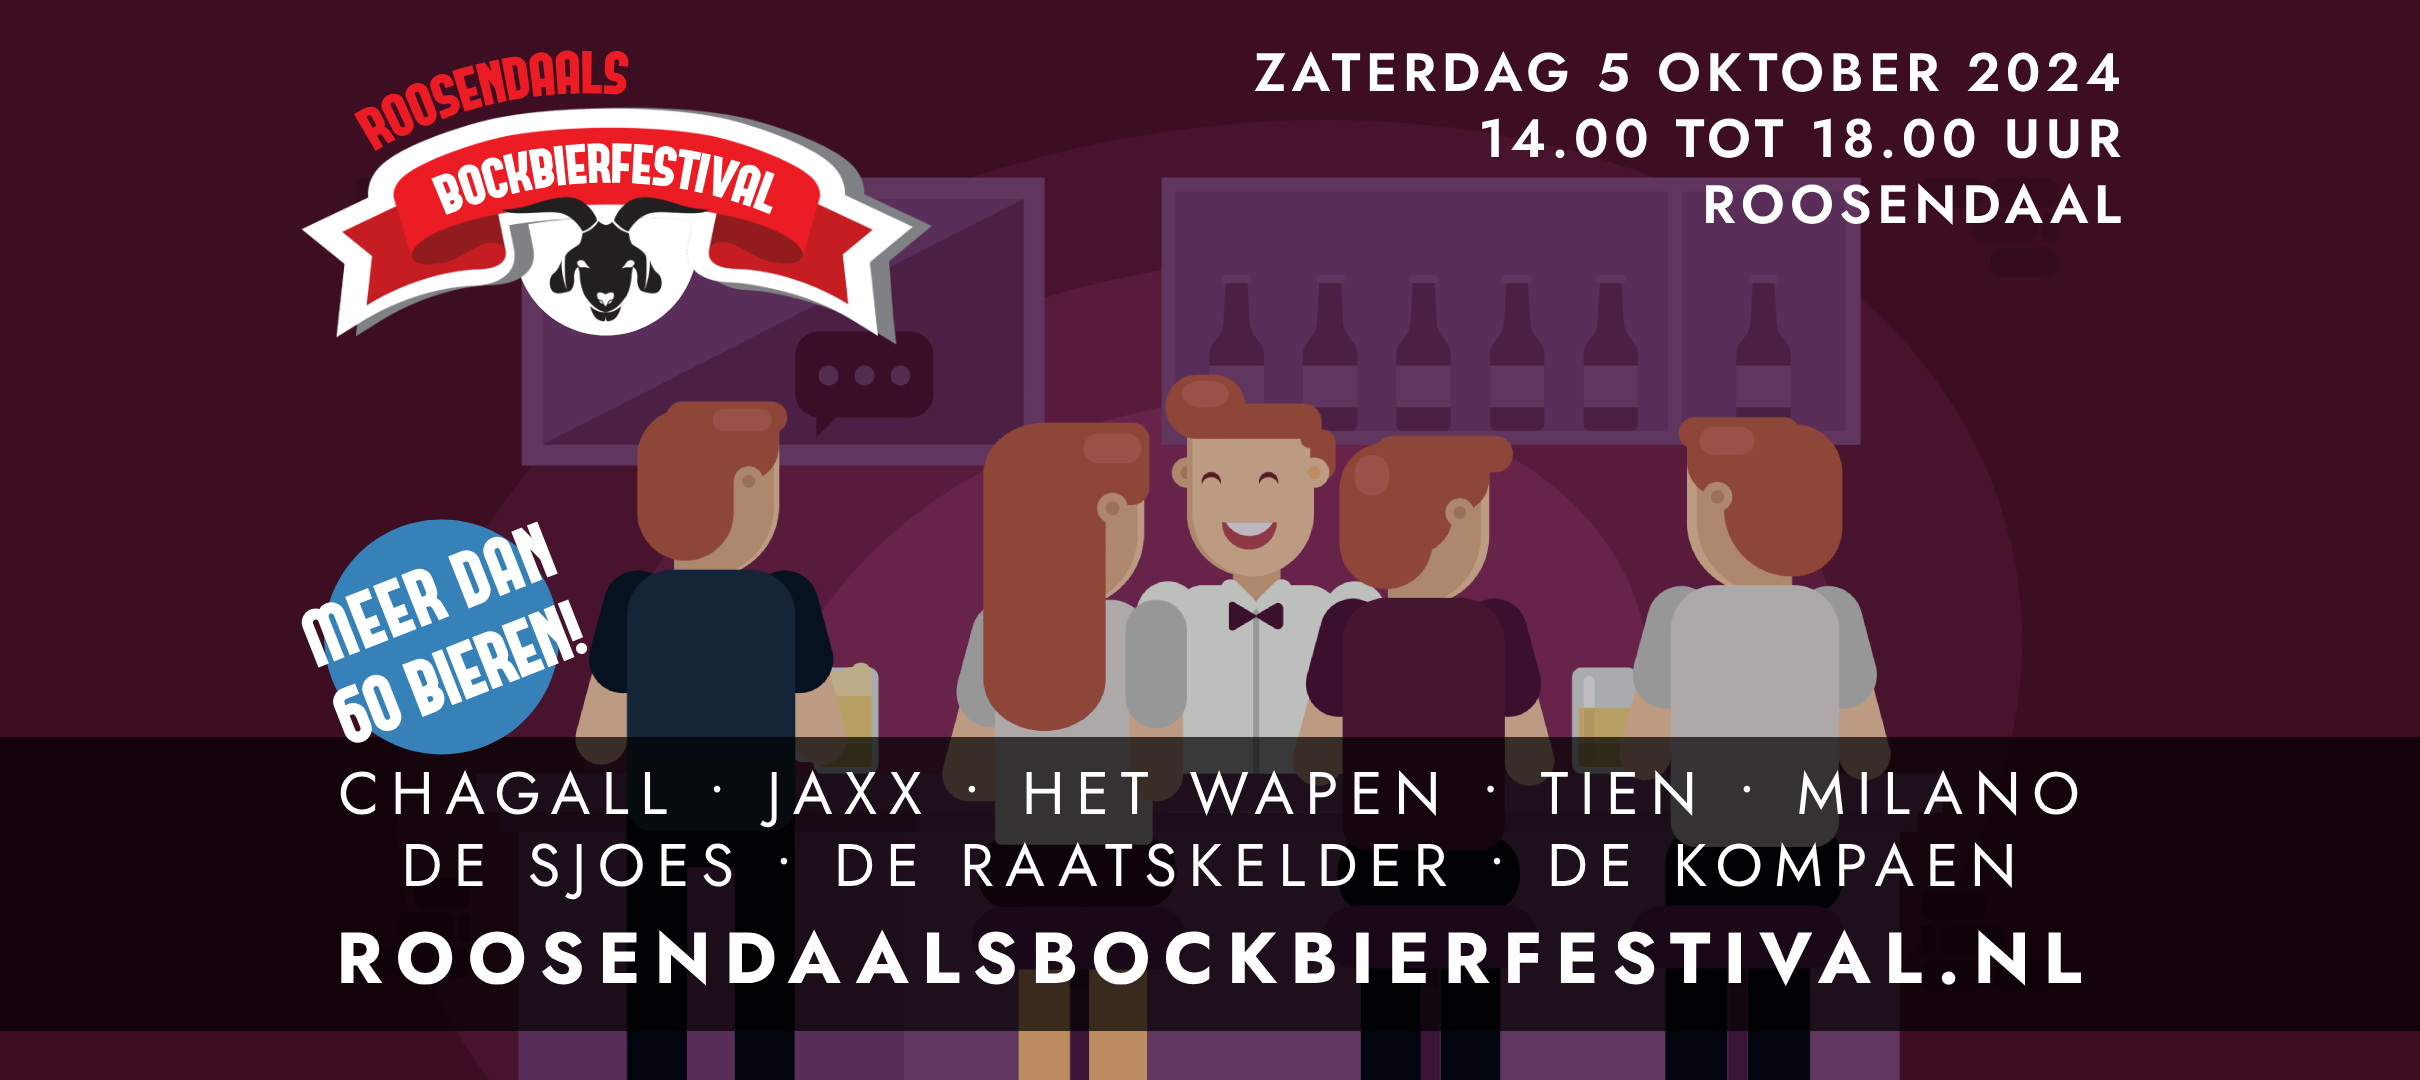 Roosendaals Bockbierfestival